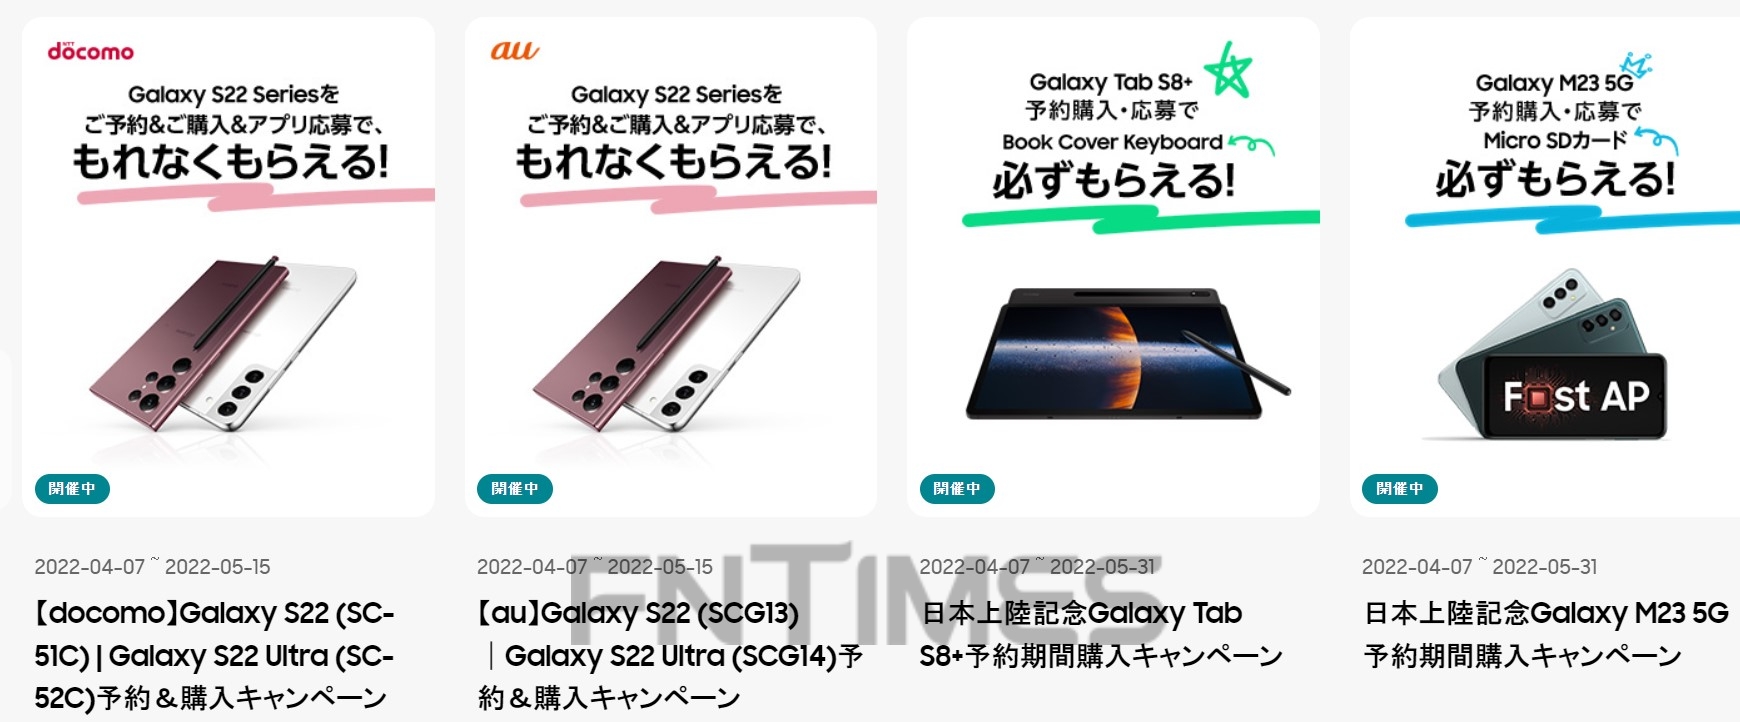 삼성전자가 일본에서 갤럭시S22와 갤럭시탭S8, 갤럭시M23 5G 등의 사전 예약을 진행 중이다. 사진=일본 갤럭시 공식 홈페이지 갈무리